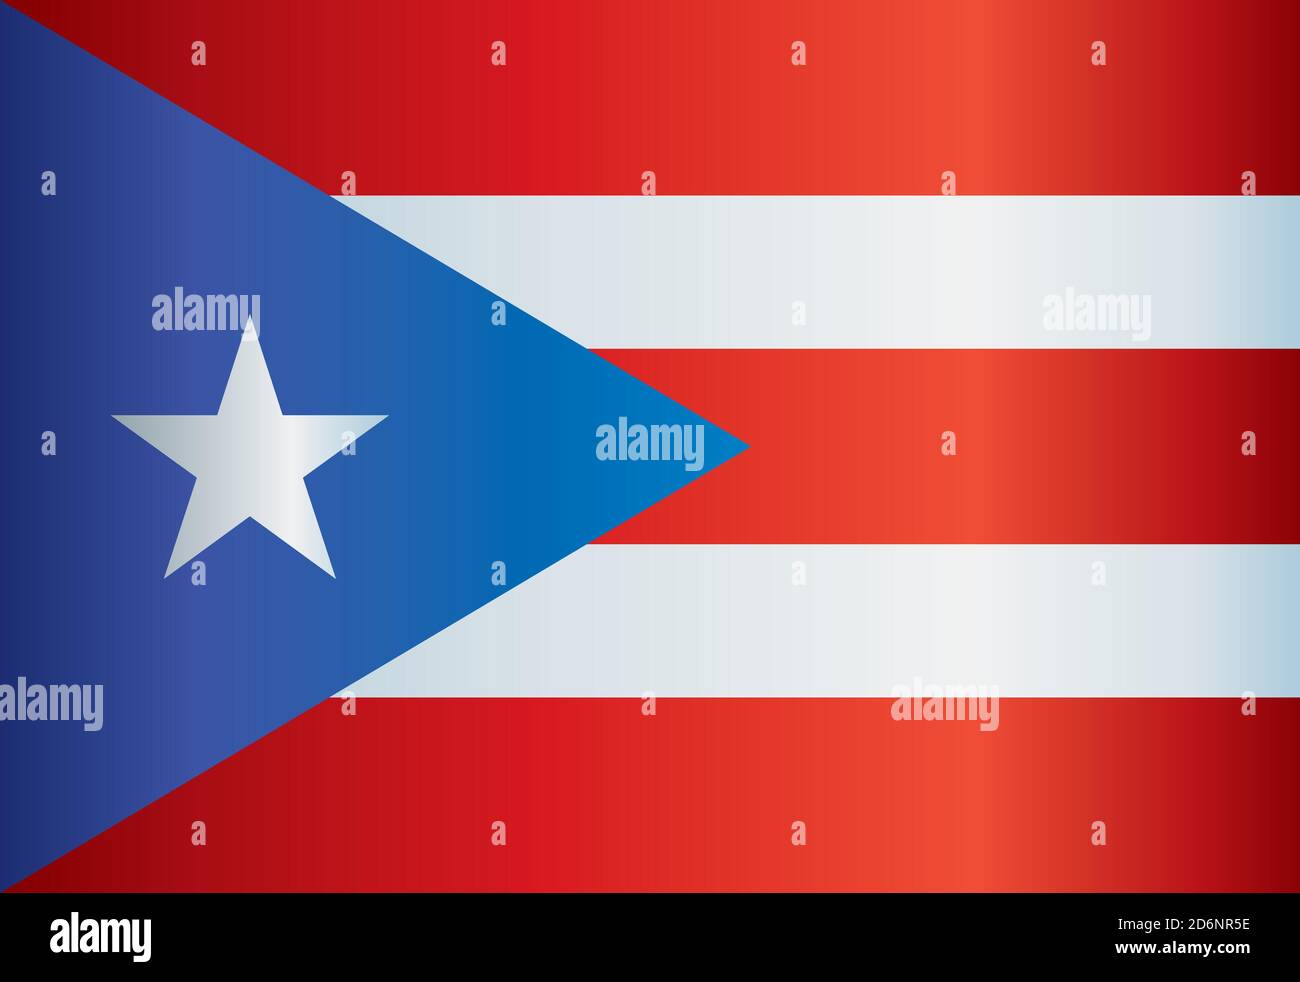 Drapeau de Porto Rico, Commonwealth de Porto Rico. Illustration vectorielle colorée et lumineuse. Illustration de Vecteur